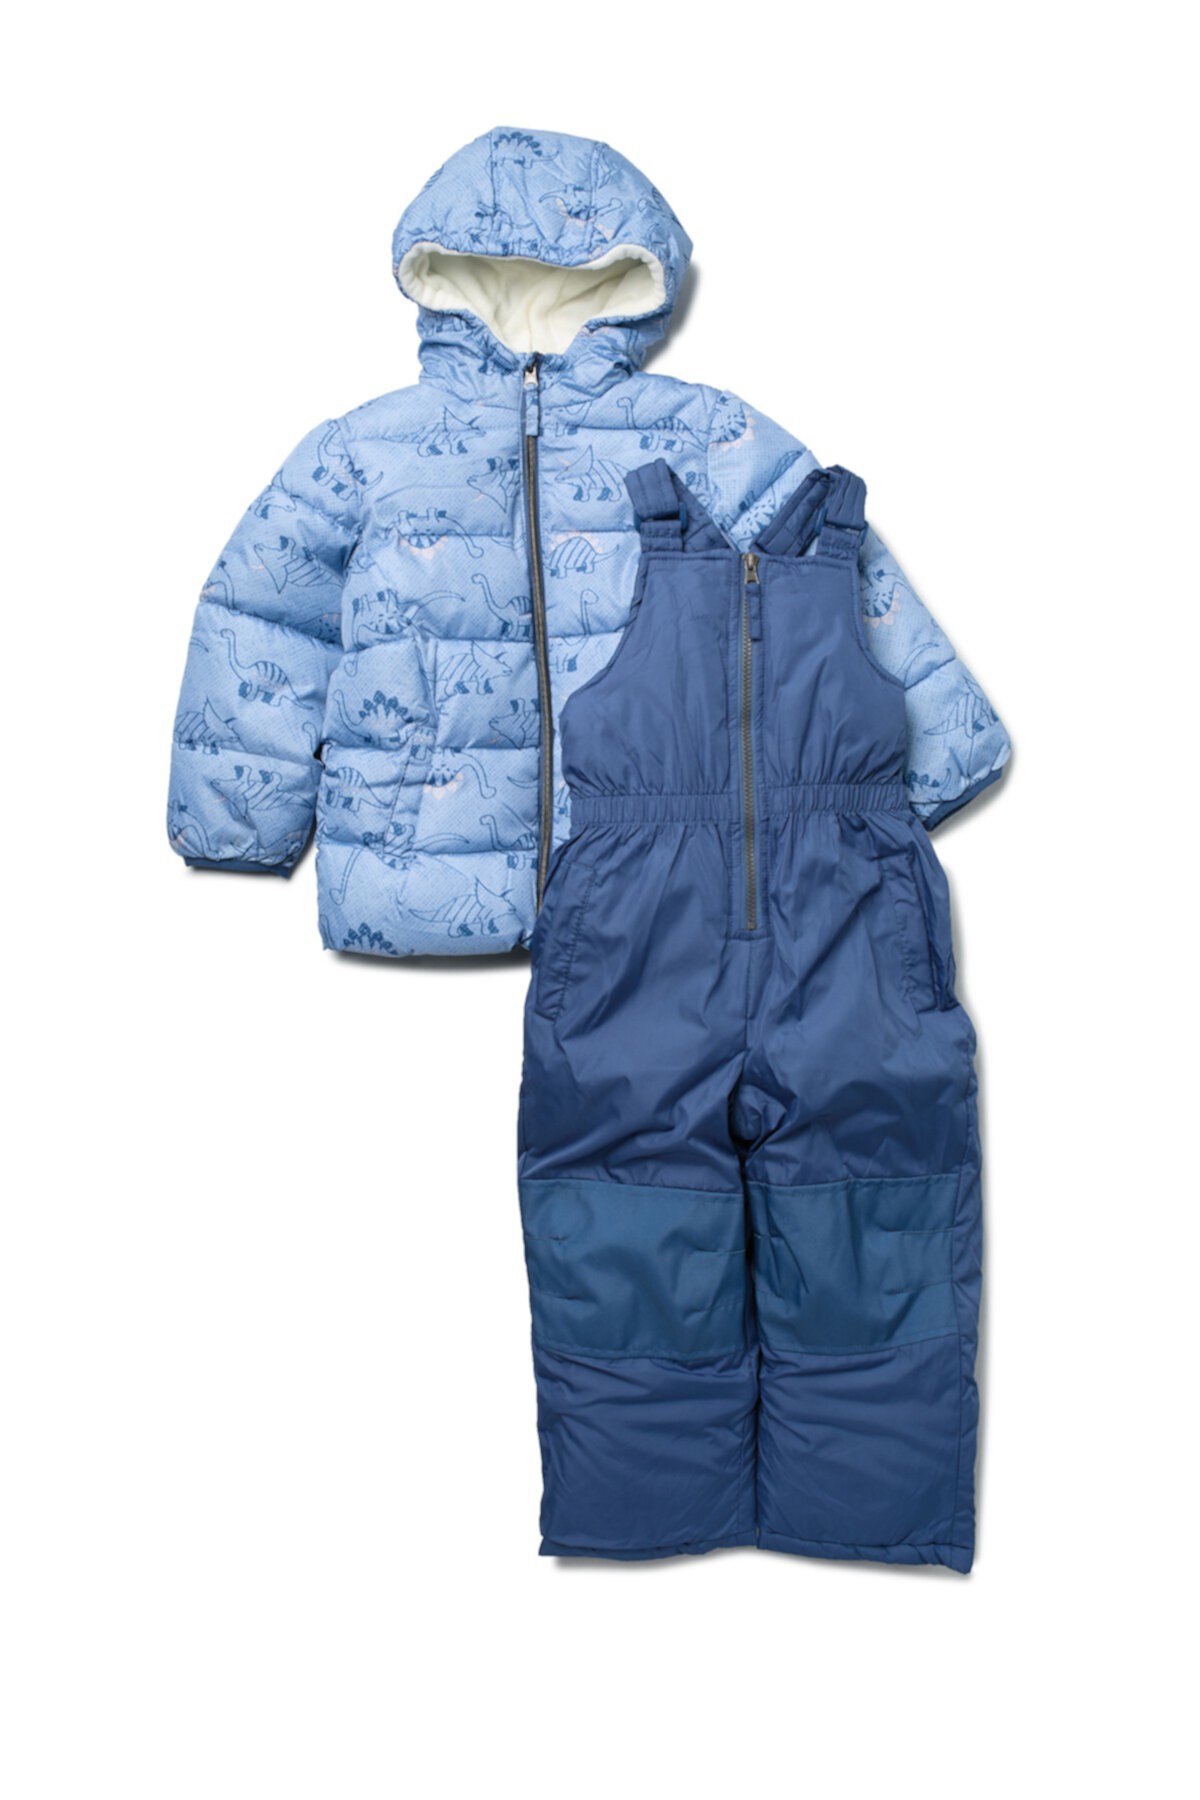 Комплект из пуховой куртки и зимнего костюма с принтом Dino (для маленьких мальчиков) Wippette